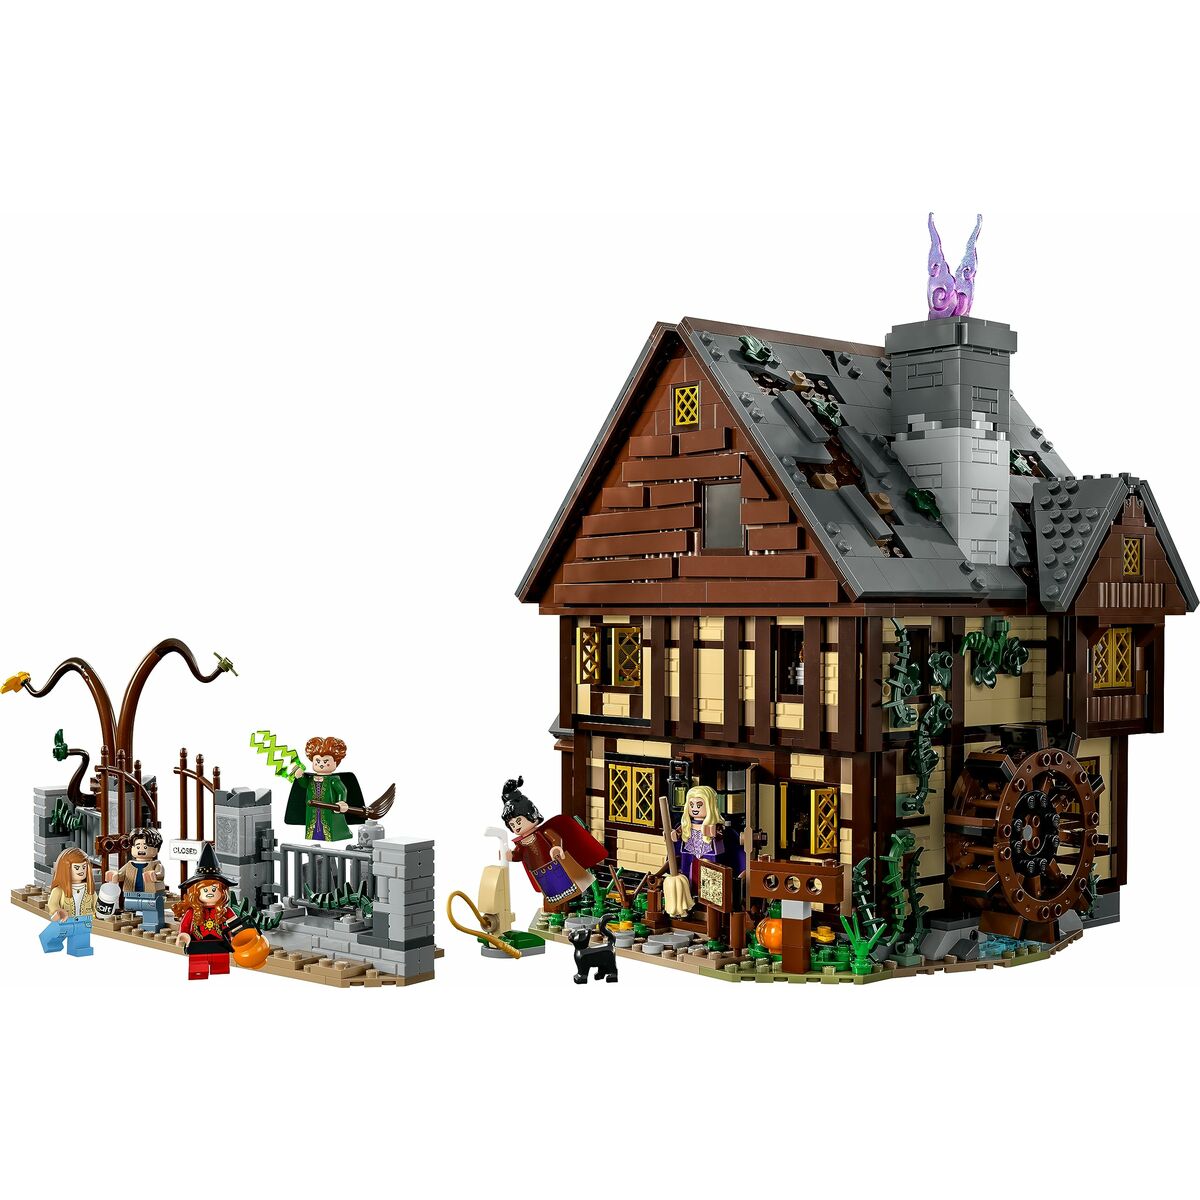 Playset Lego Disney Hocus Pocus - Sanderson Sisters' Cottage 21341 2316 Pezzi - Disponibile in 3-4 giorni lavorativi